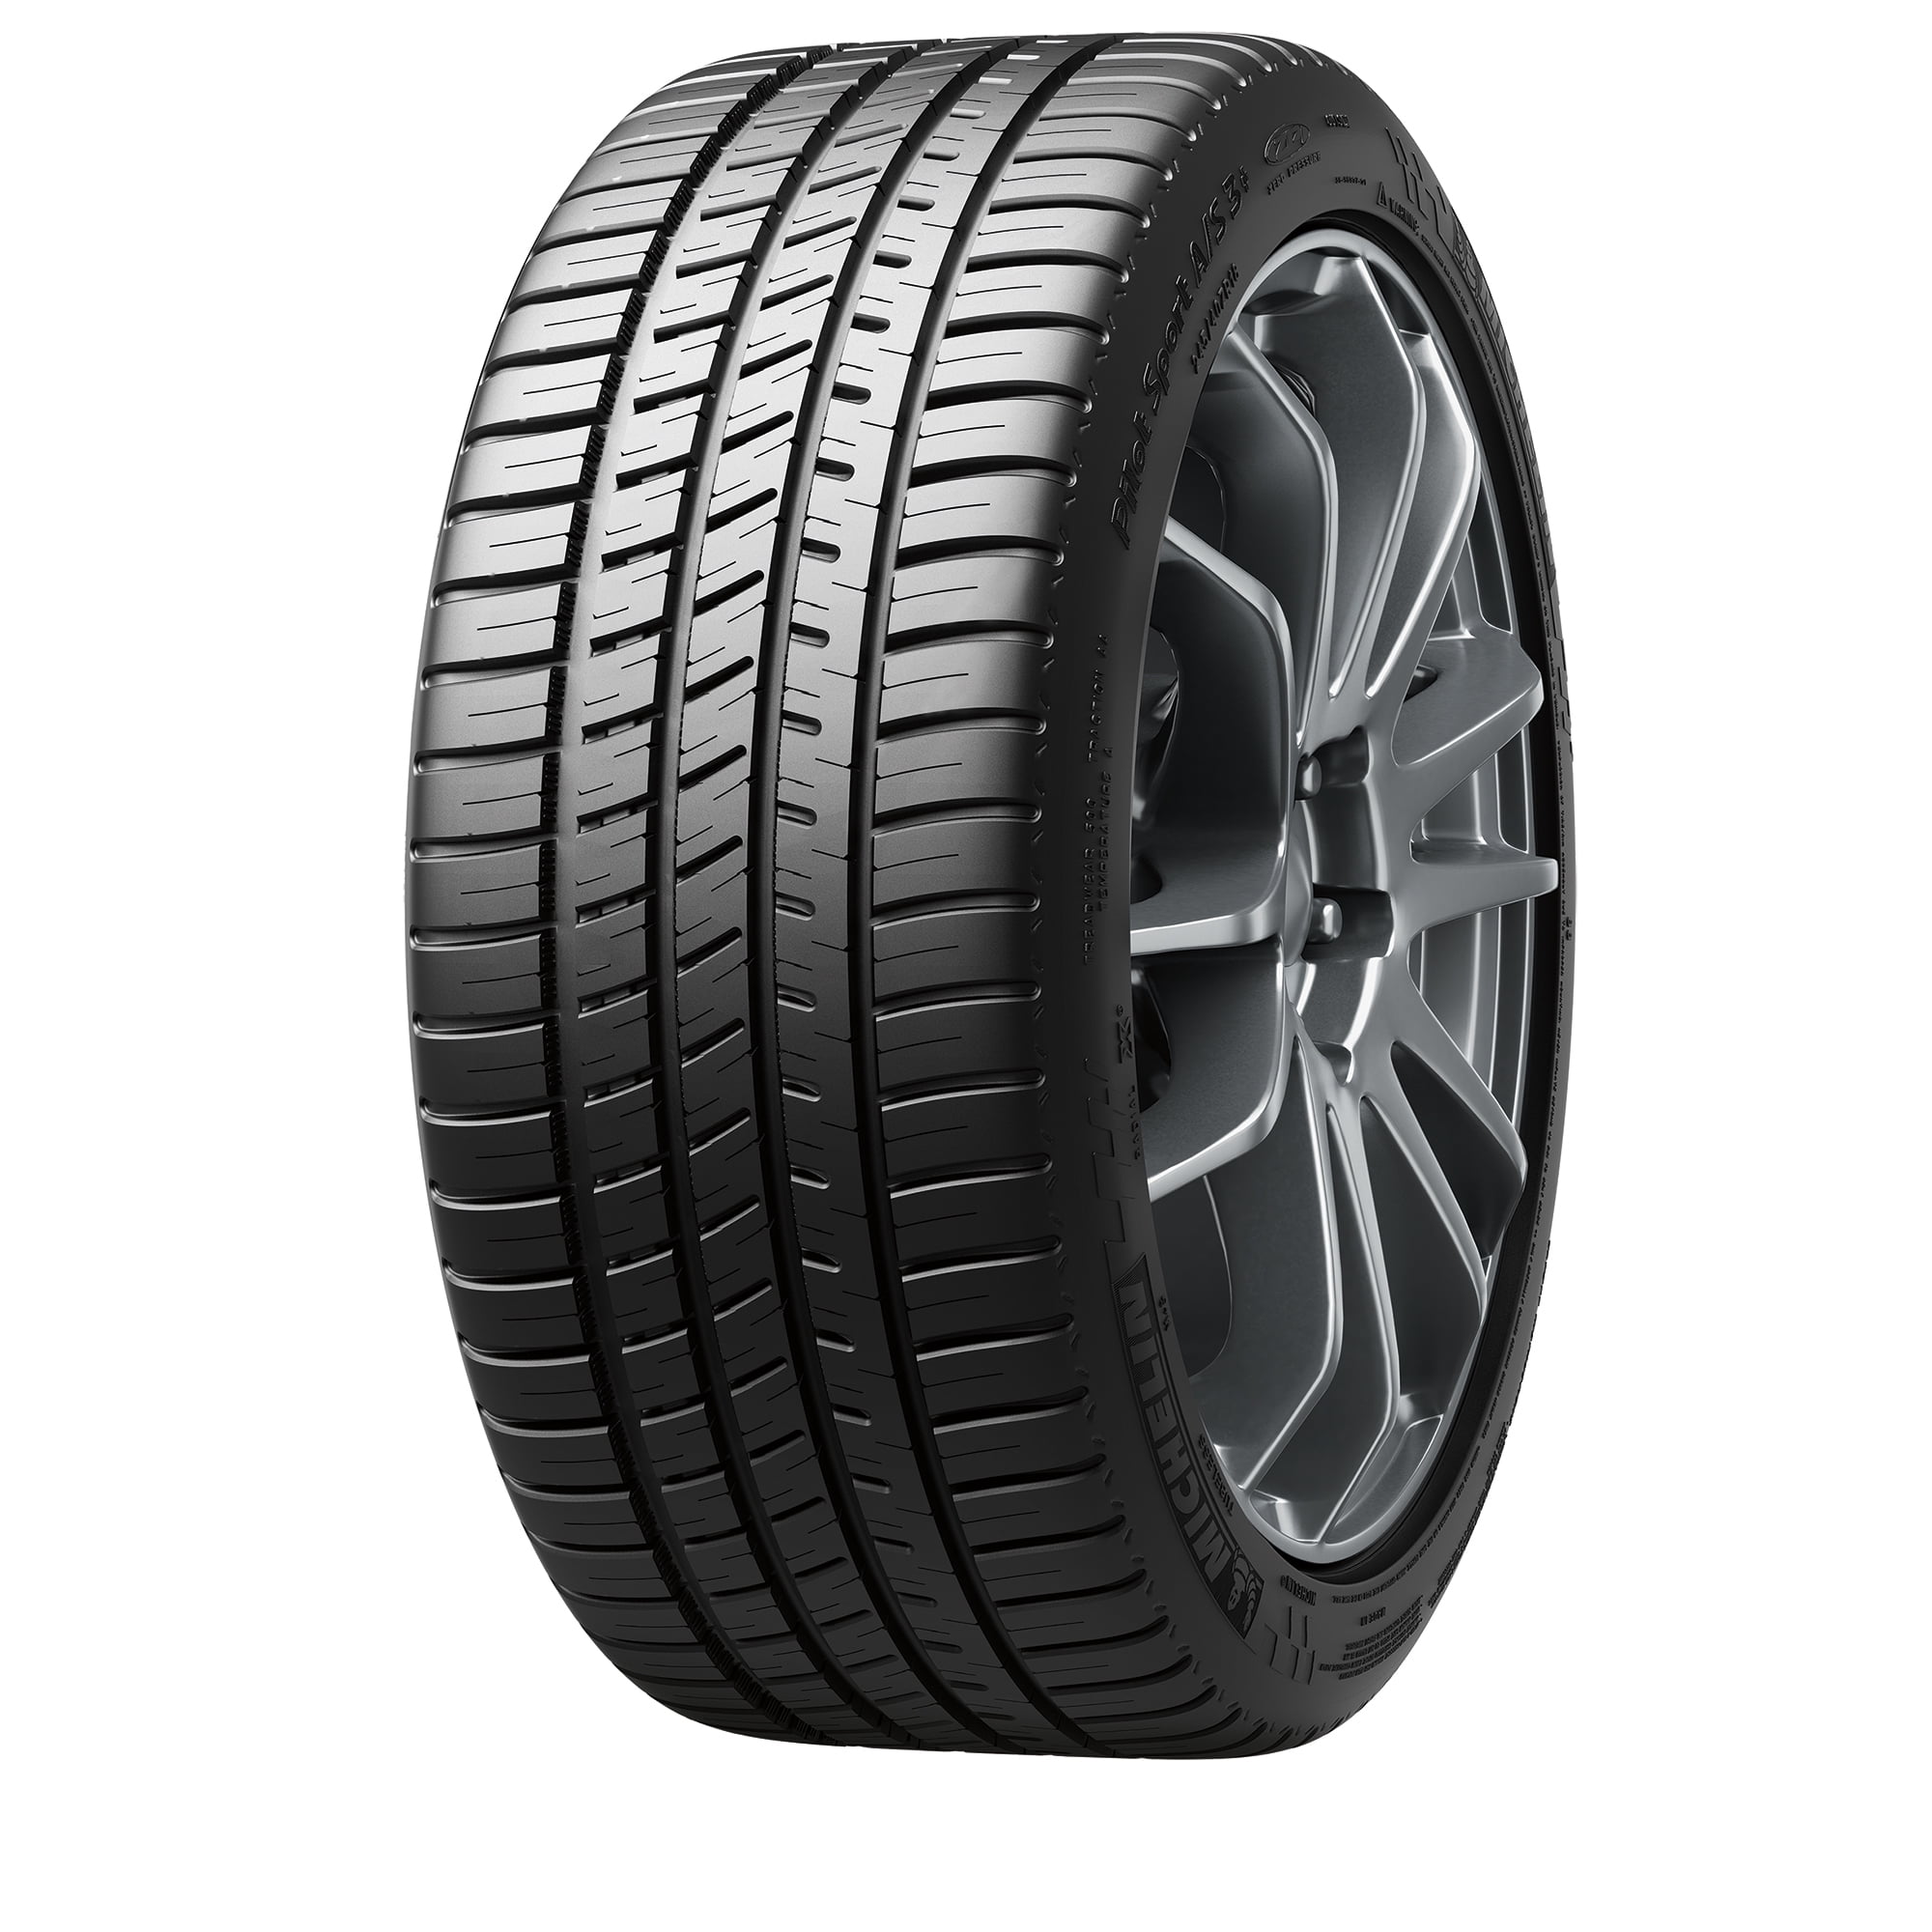 Pilot A/S All-Season Michelin 3+ Tire Sport 87V 215/45R17